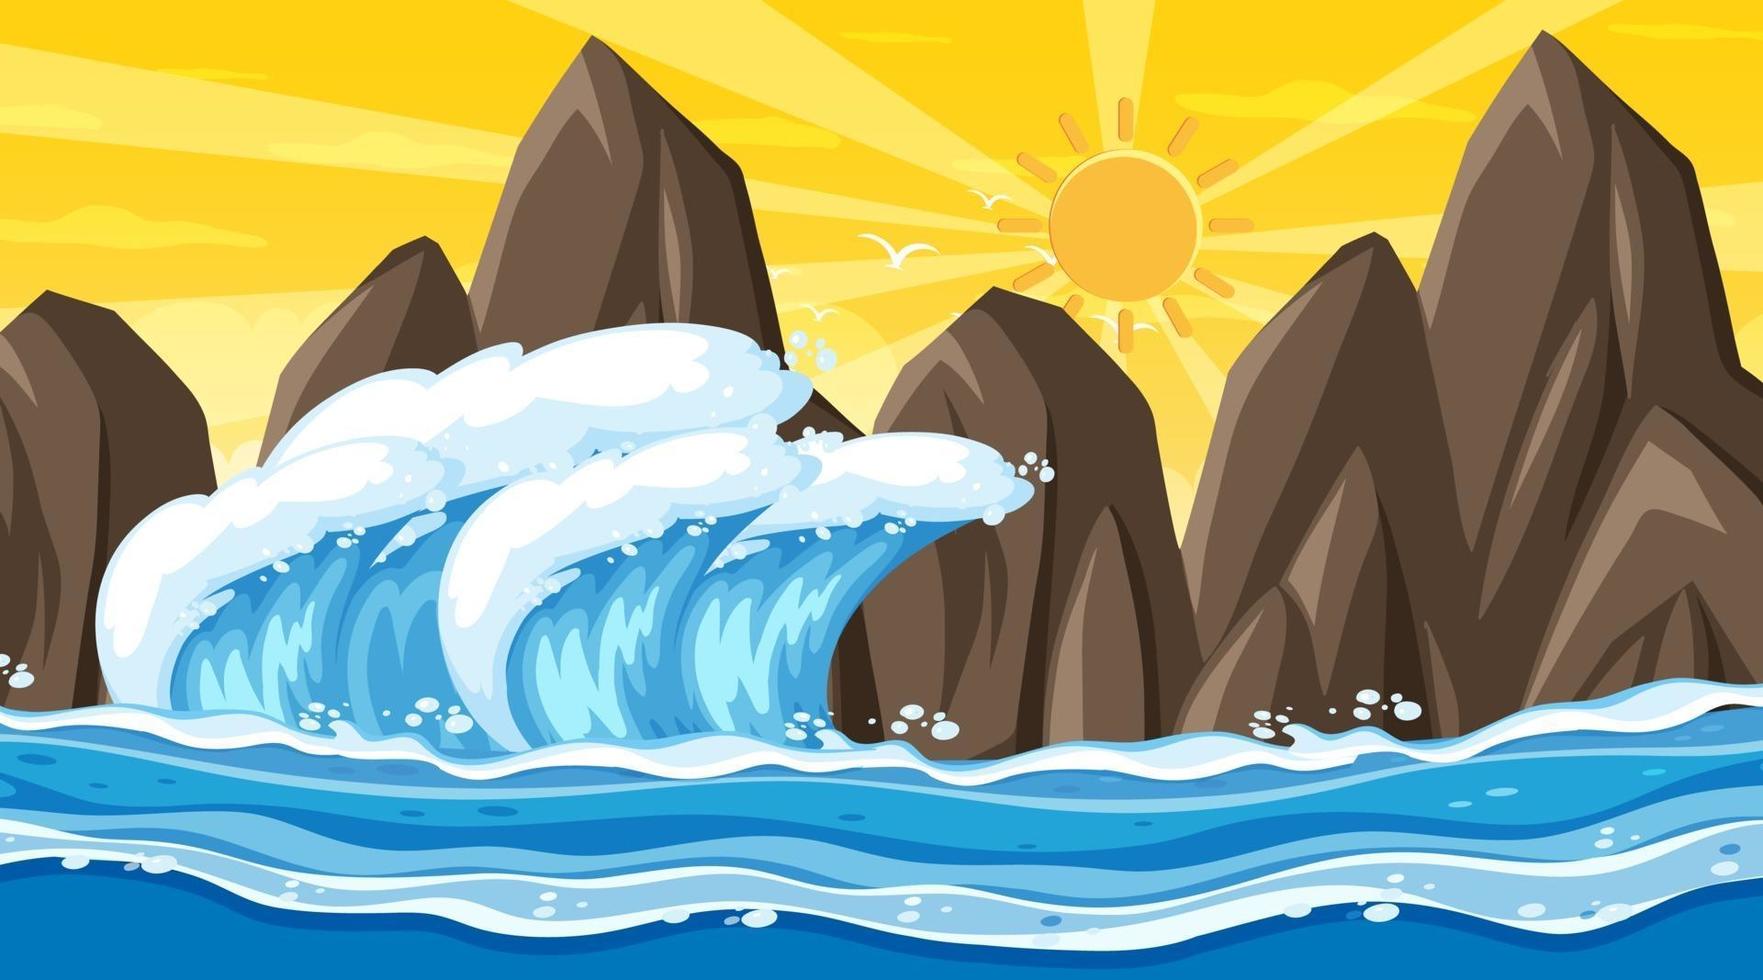 Strandlandschaft bei Sonnenuntergangsszene mit Ozeanwelle vektor